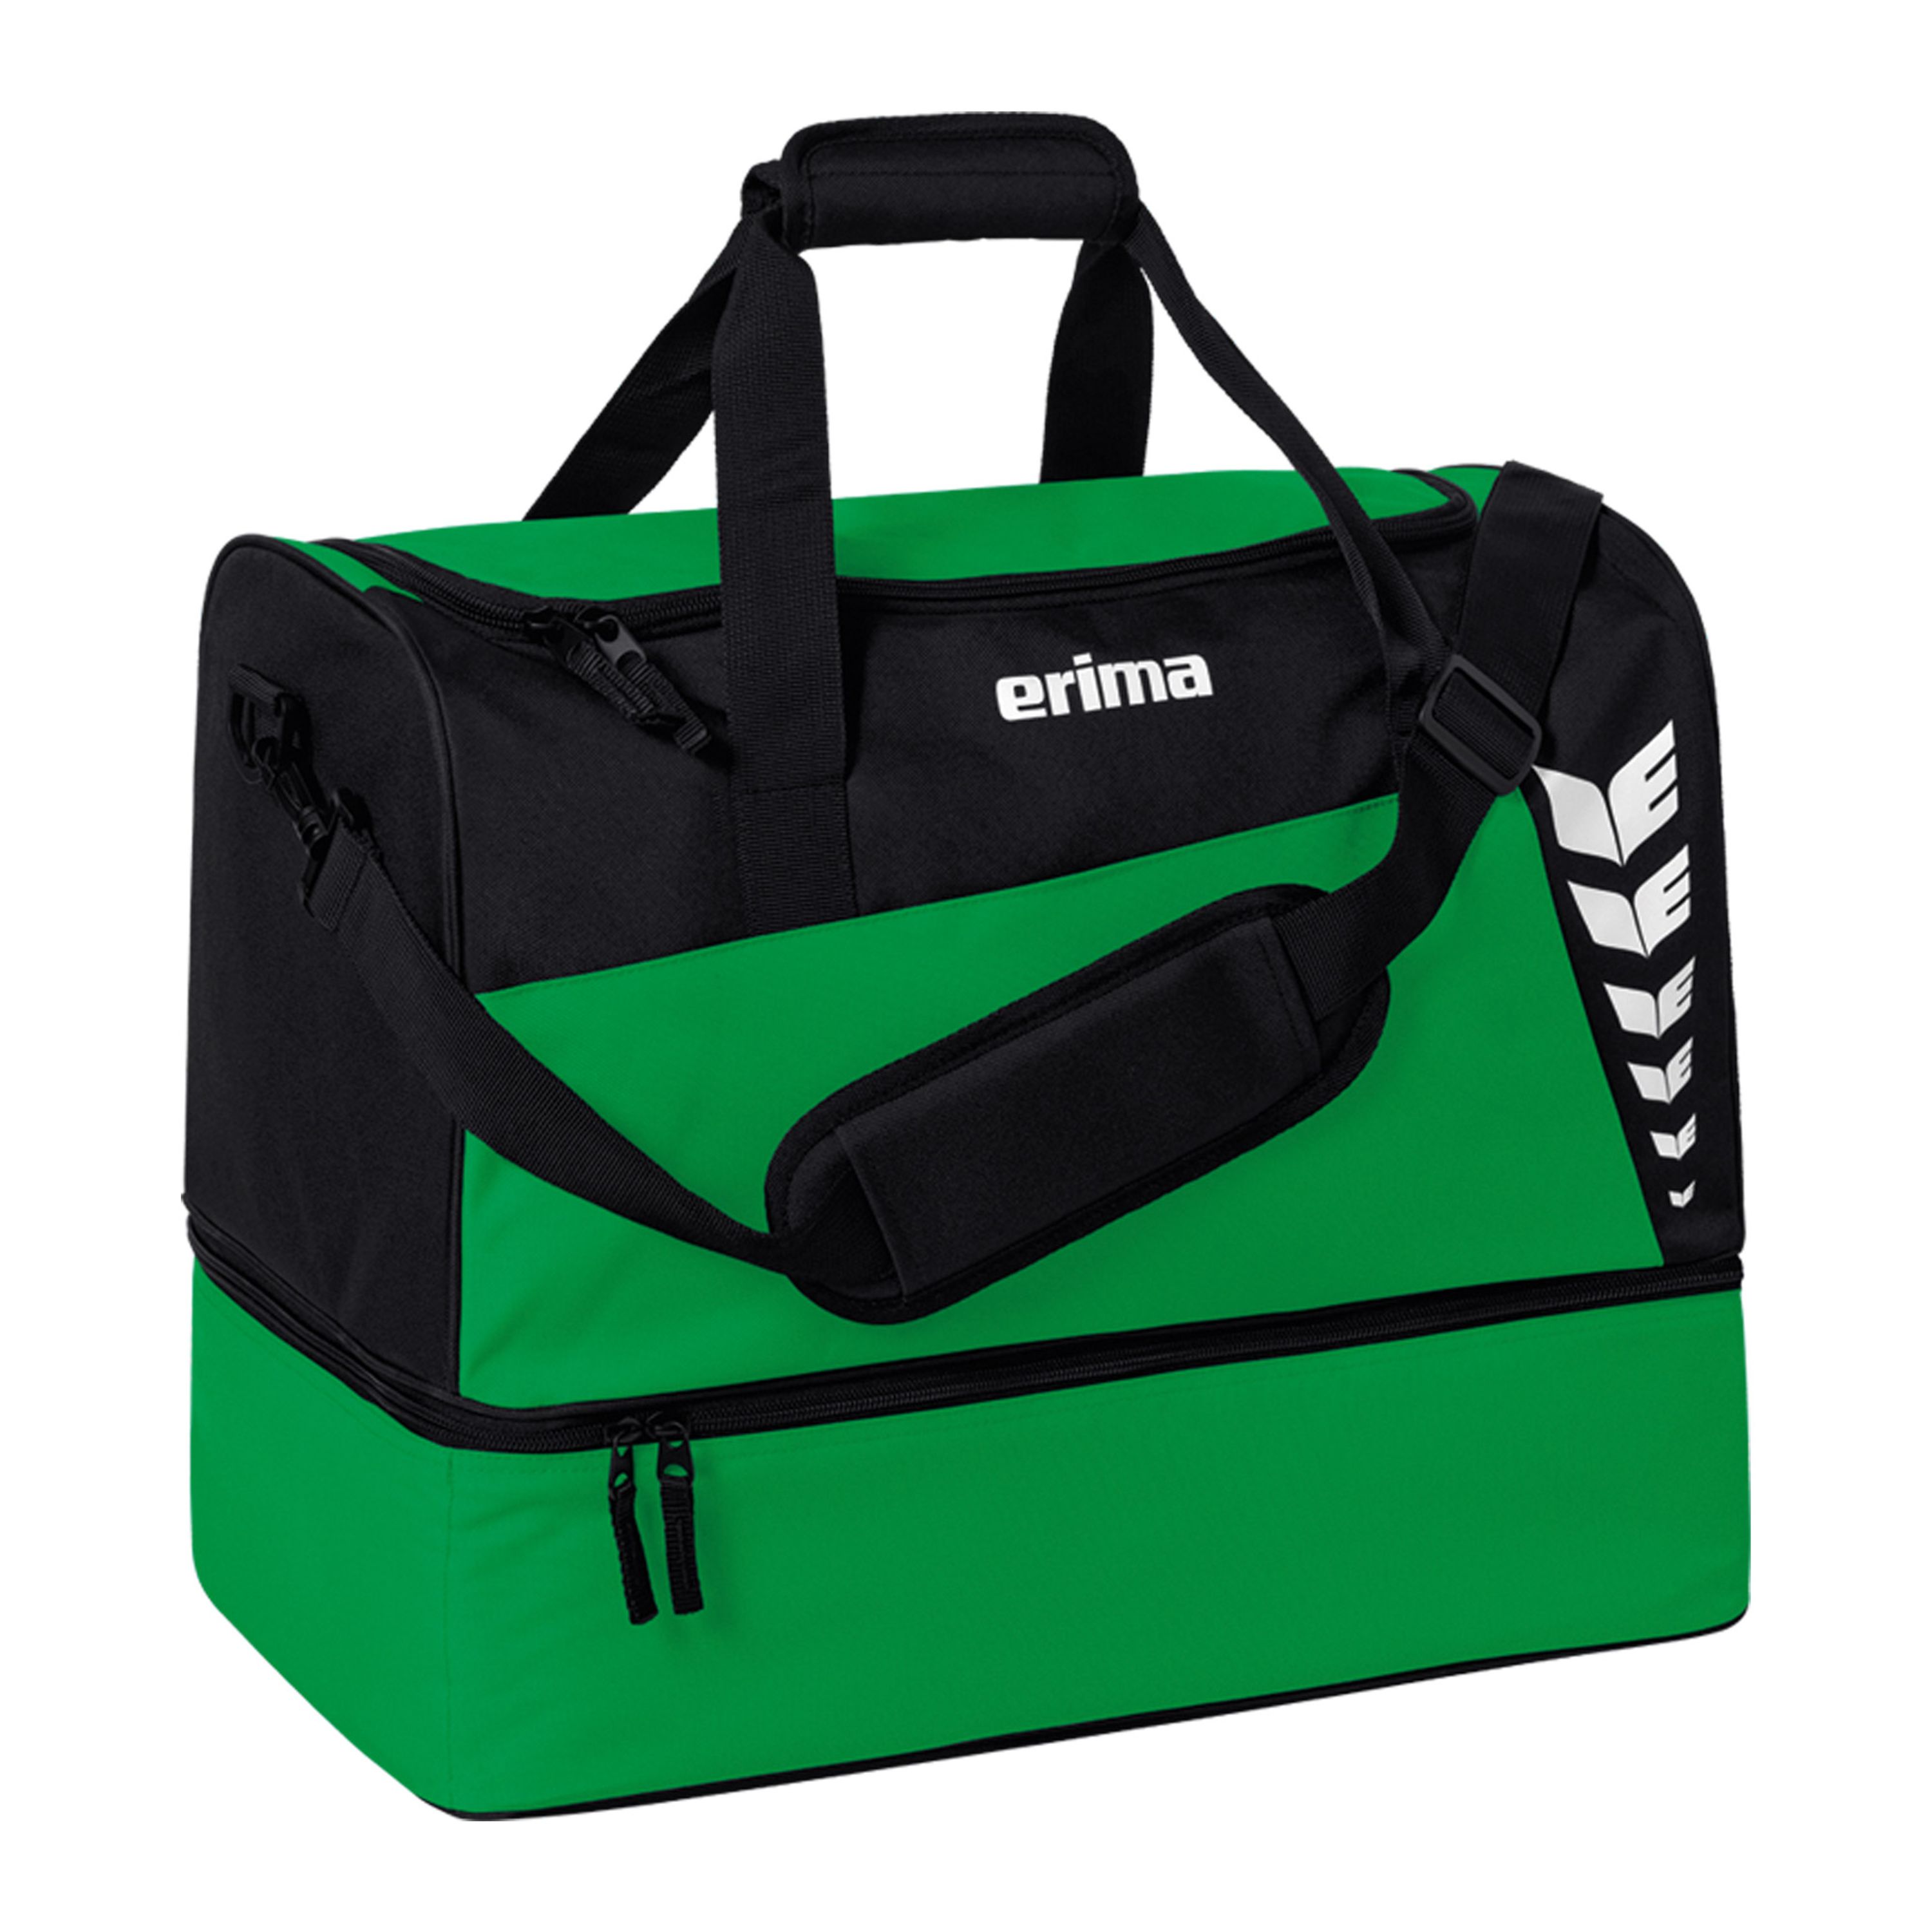 erima Six Wings Sporttasche mit Bodenfach smaragd/schwarz S